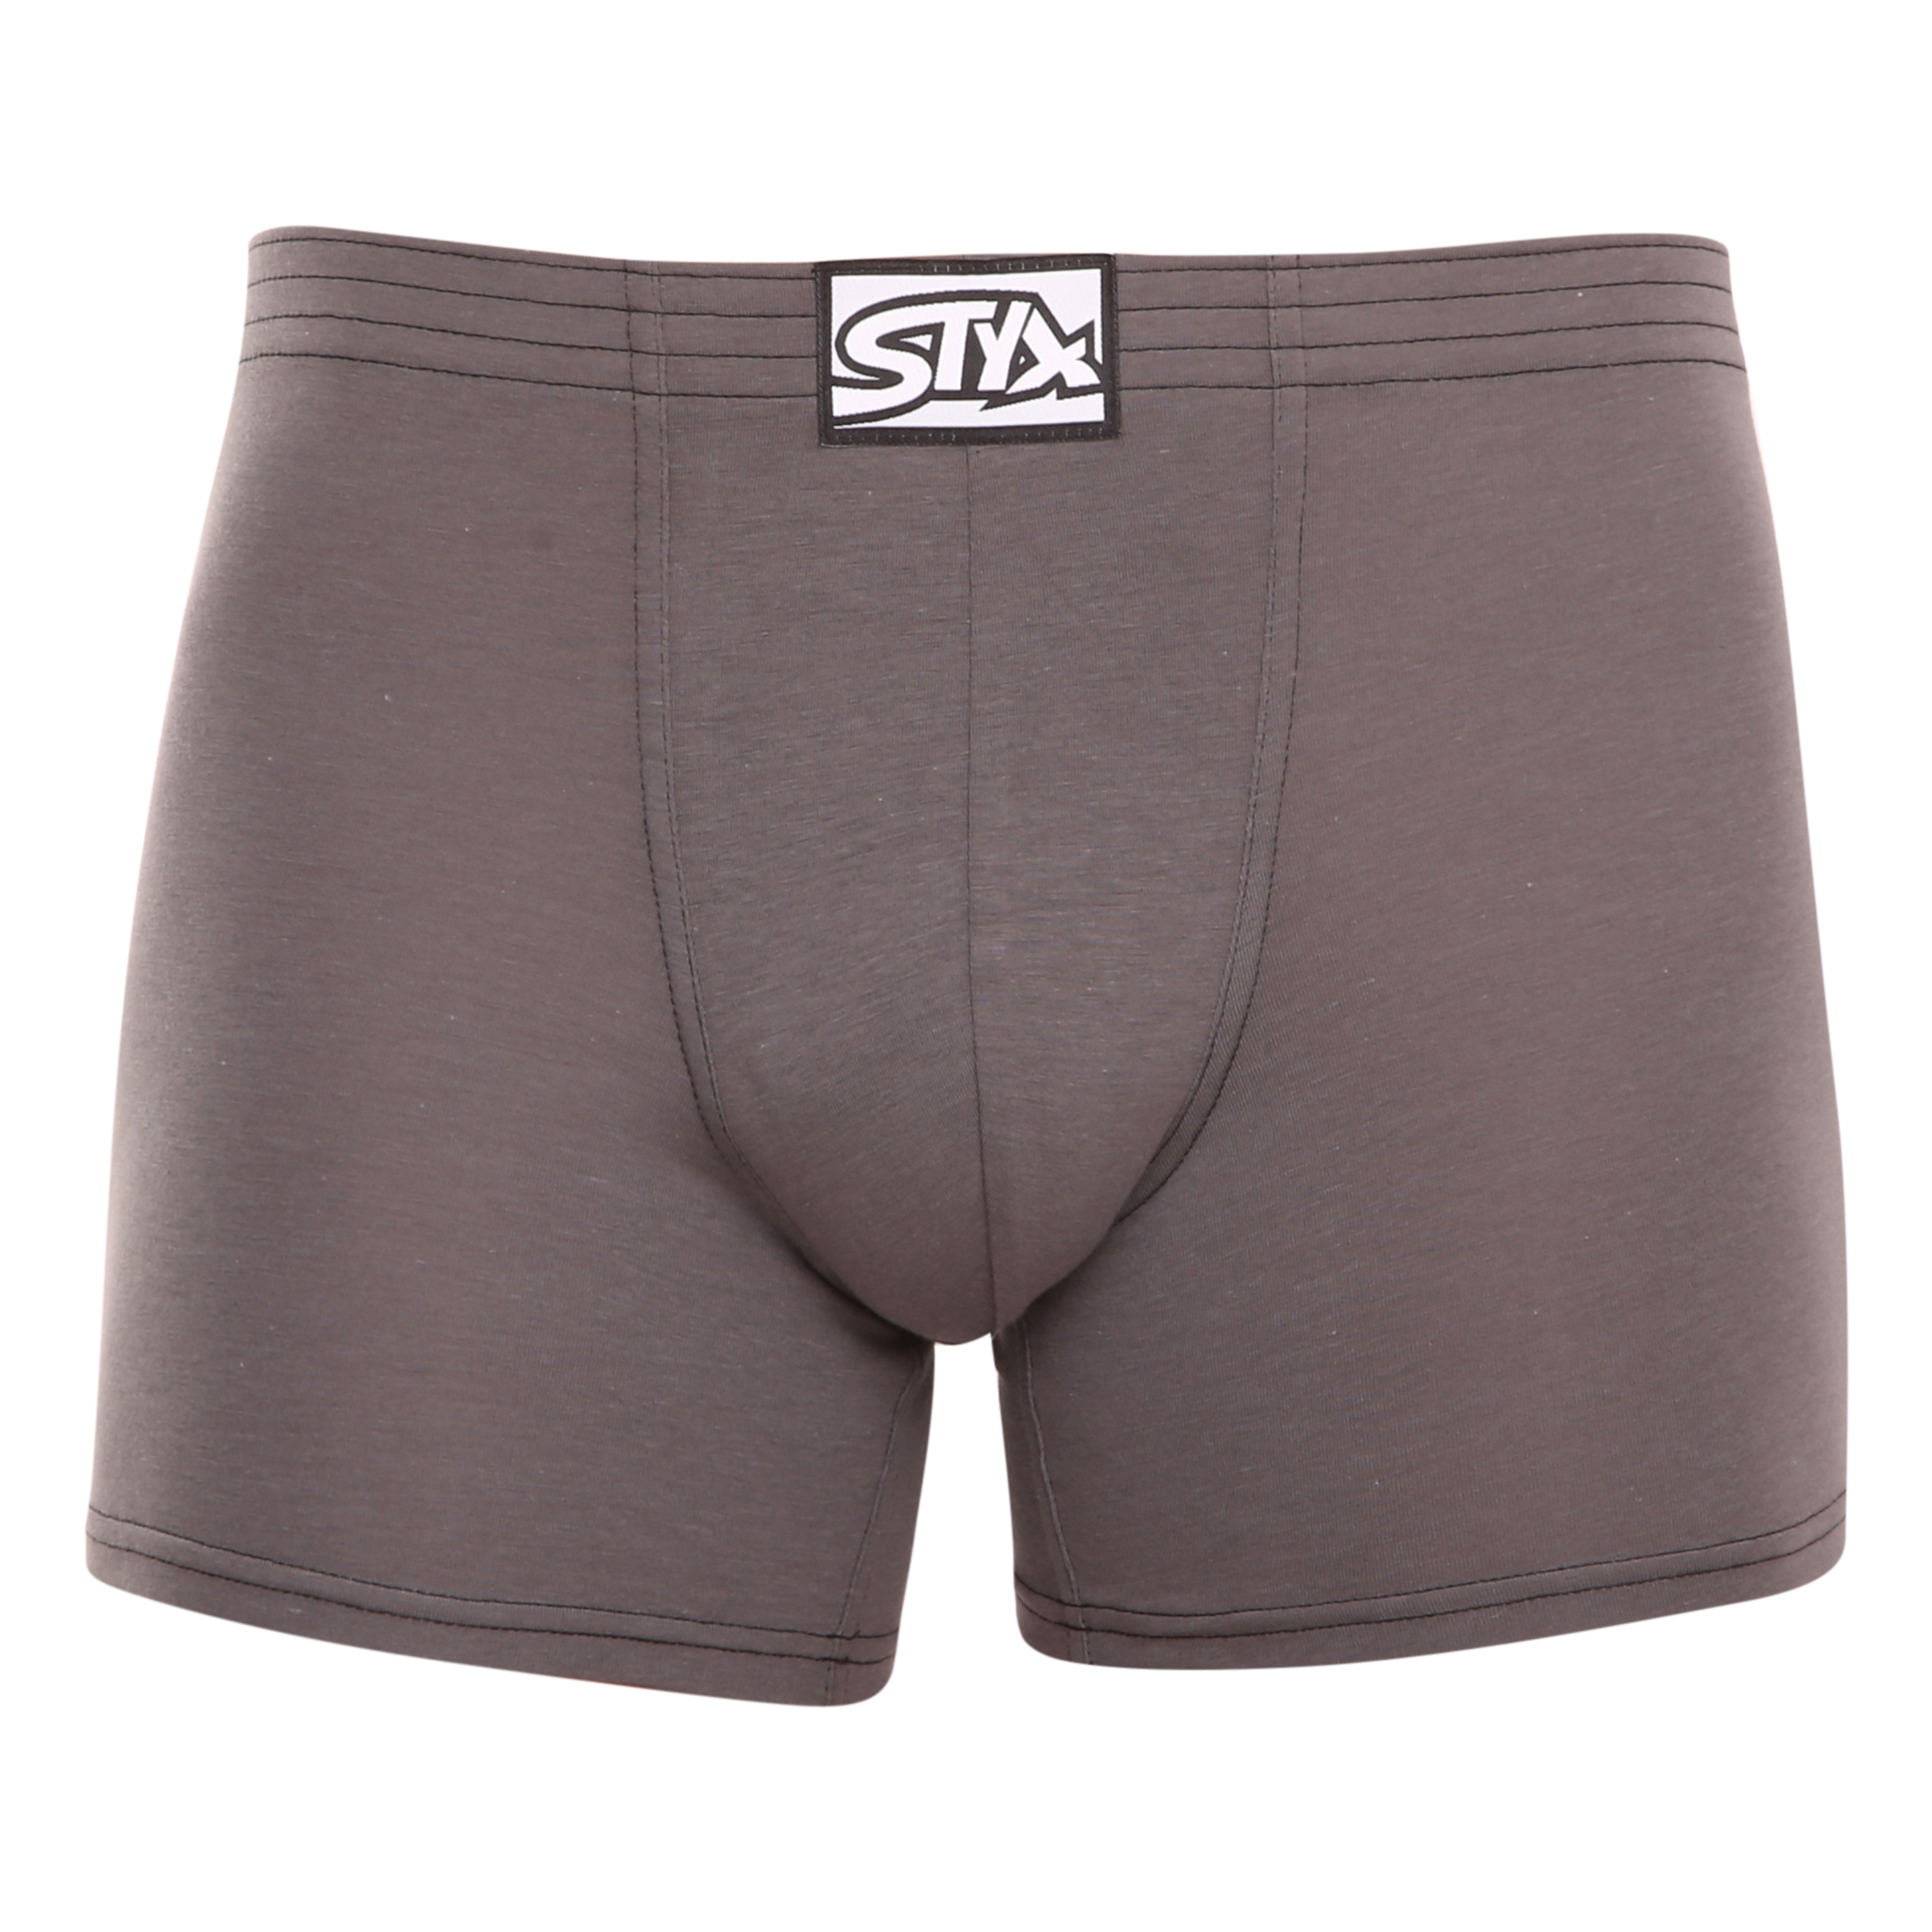 E-shop Pánské boxerky Styx long klasická guma tmavě šedé